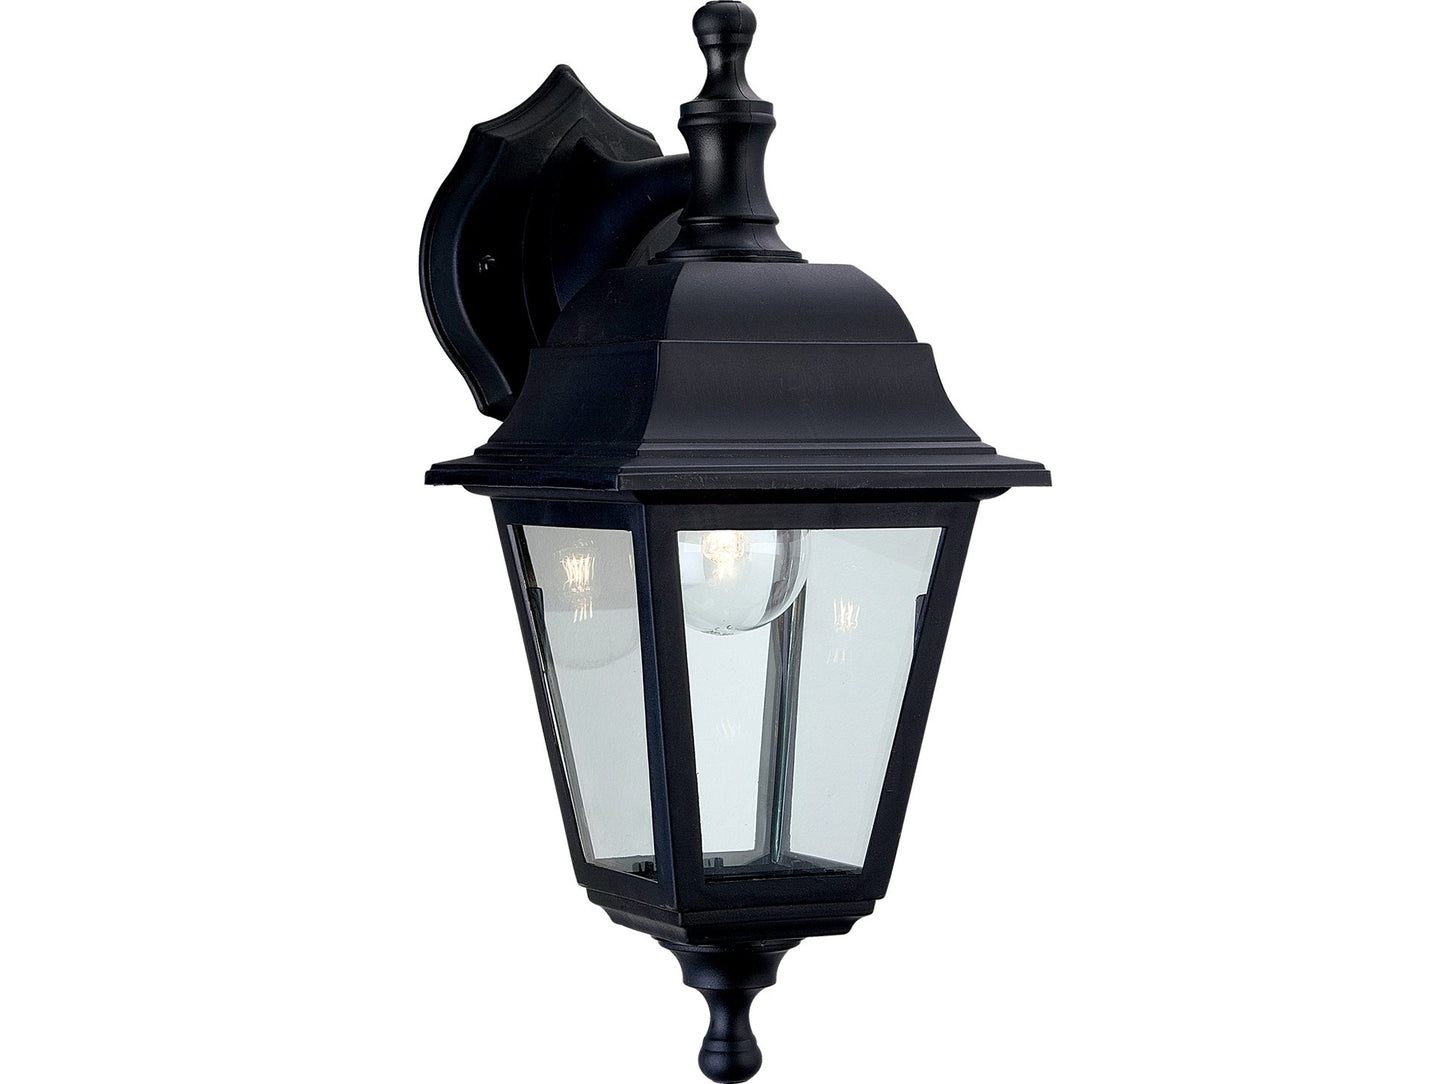 Oslo Resin Lantern - Uplight/Downlight Black